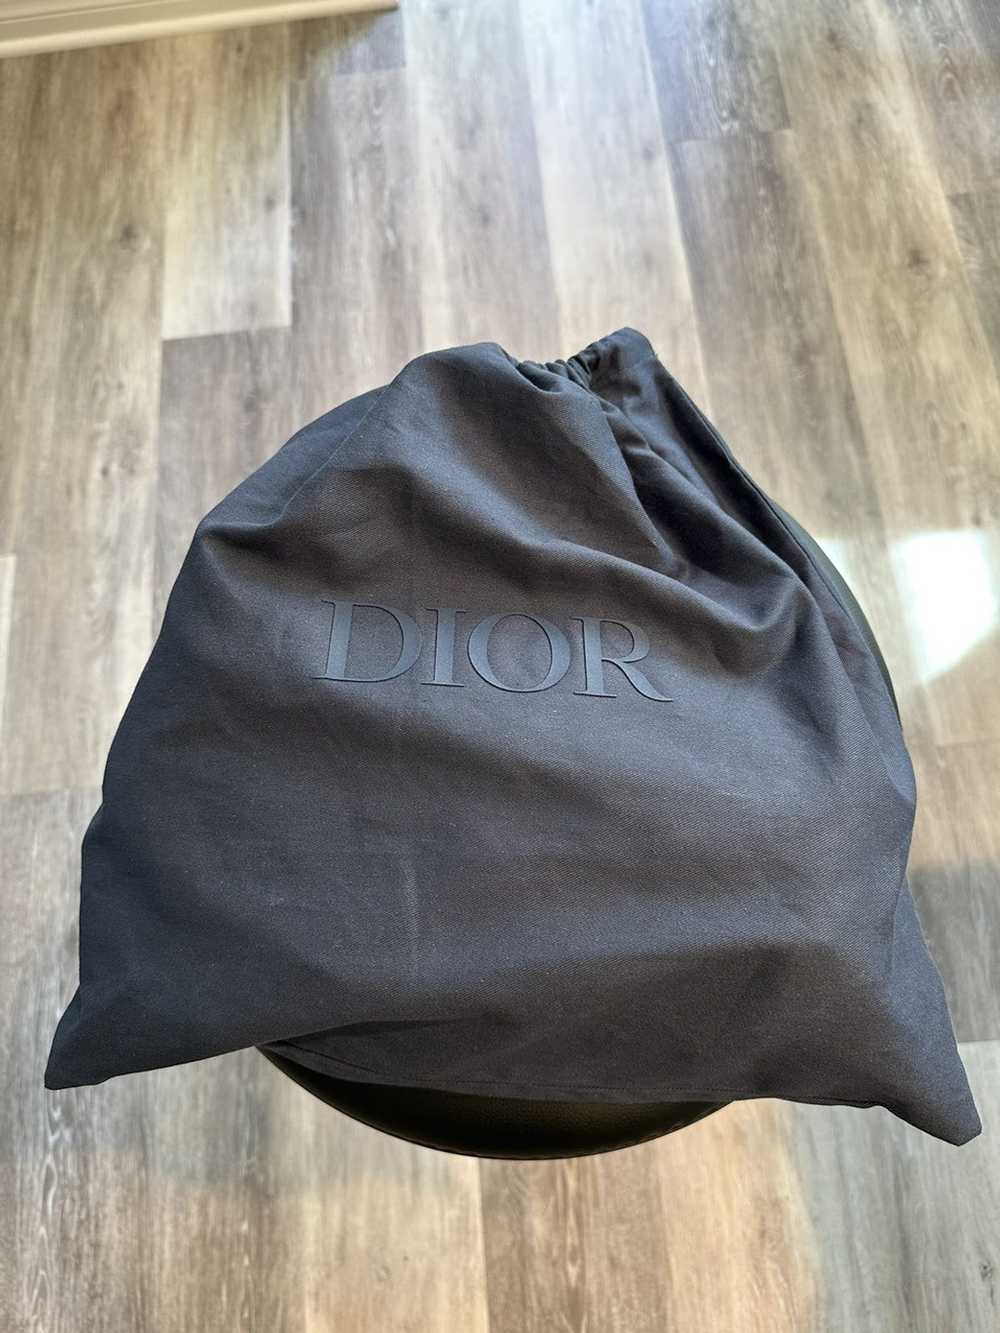 Dior Saddle bag - image 2